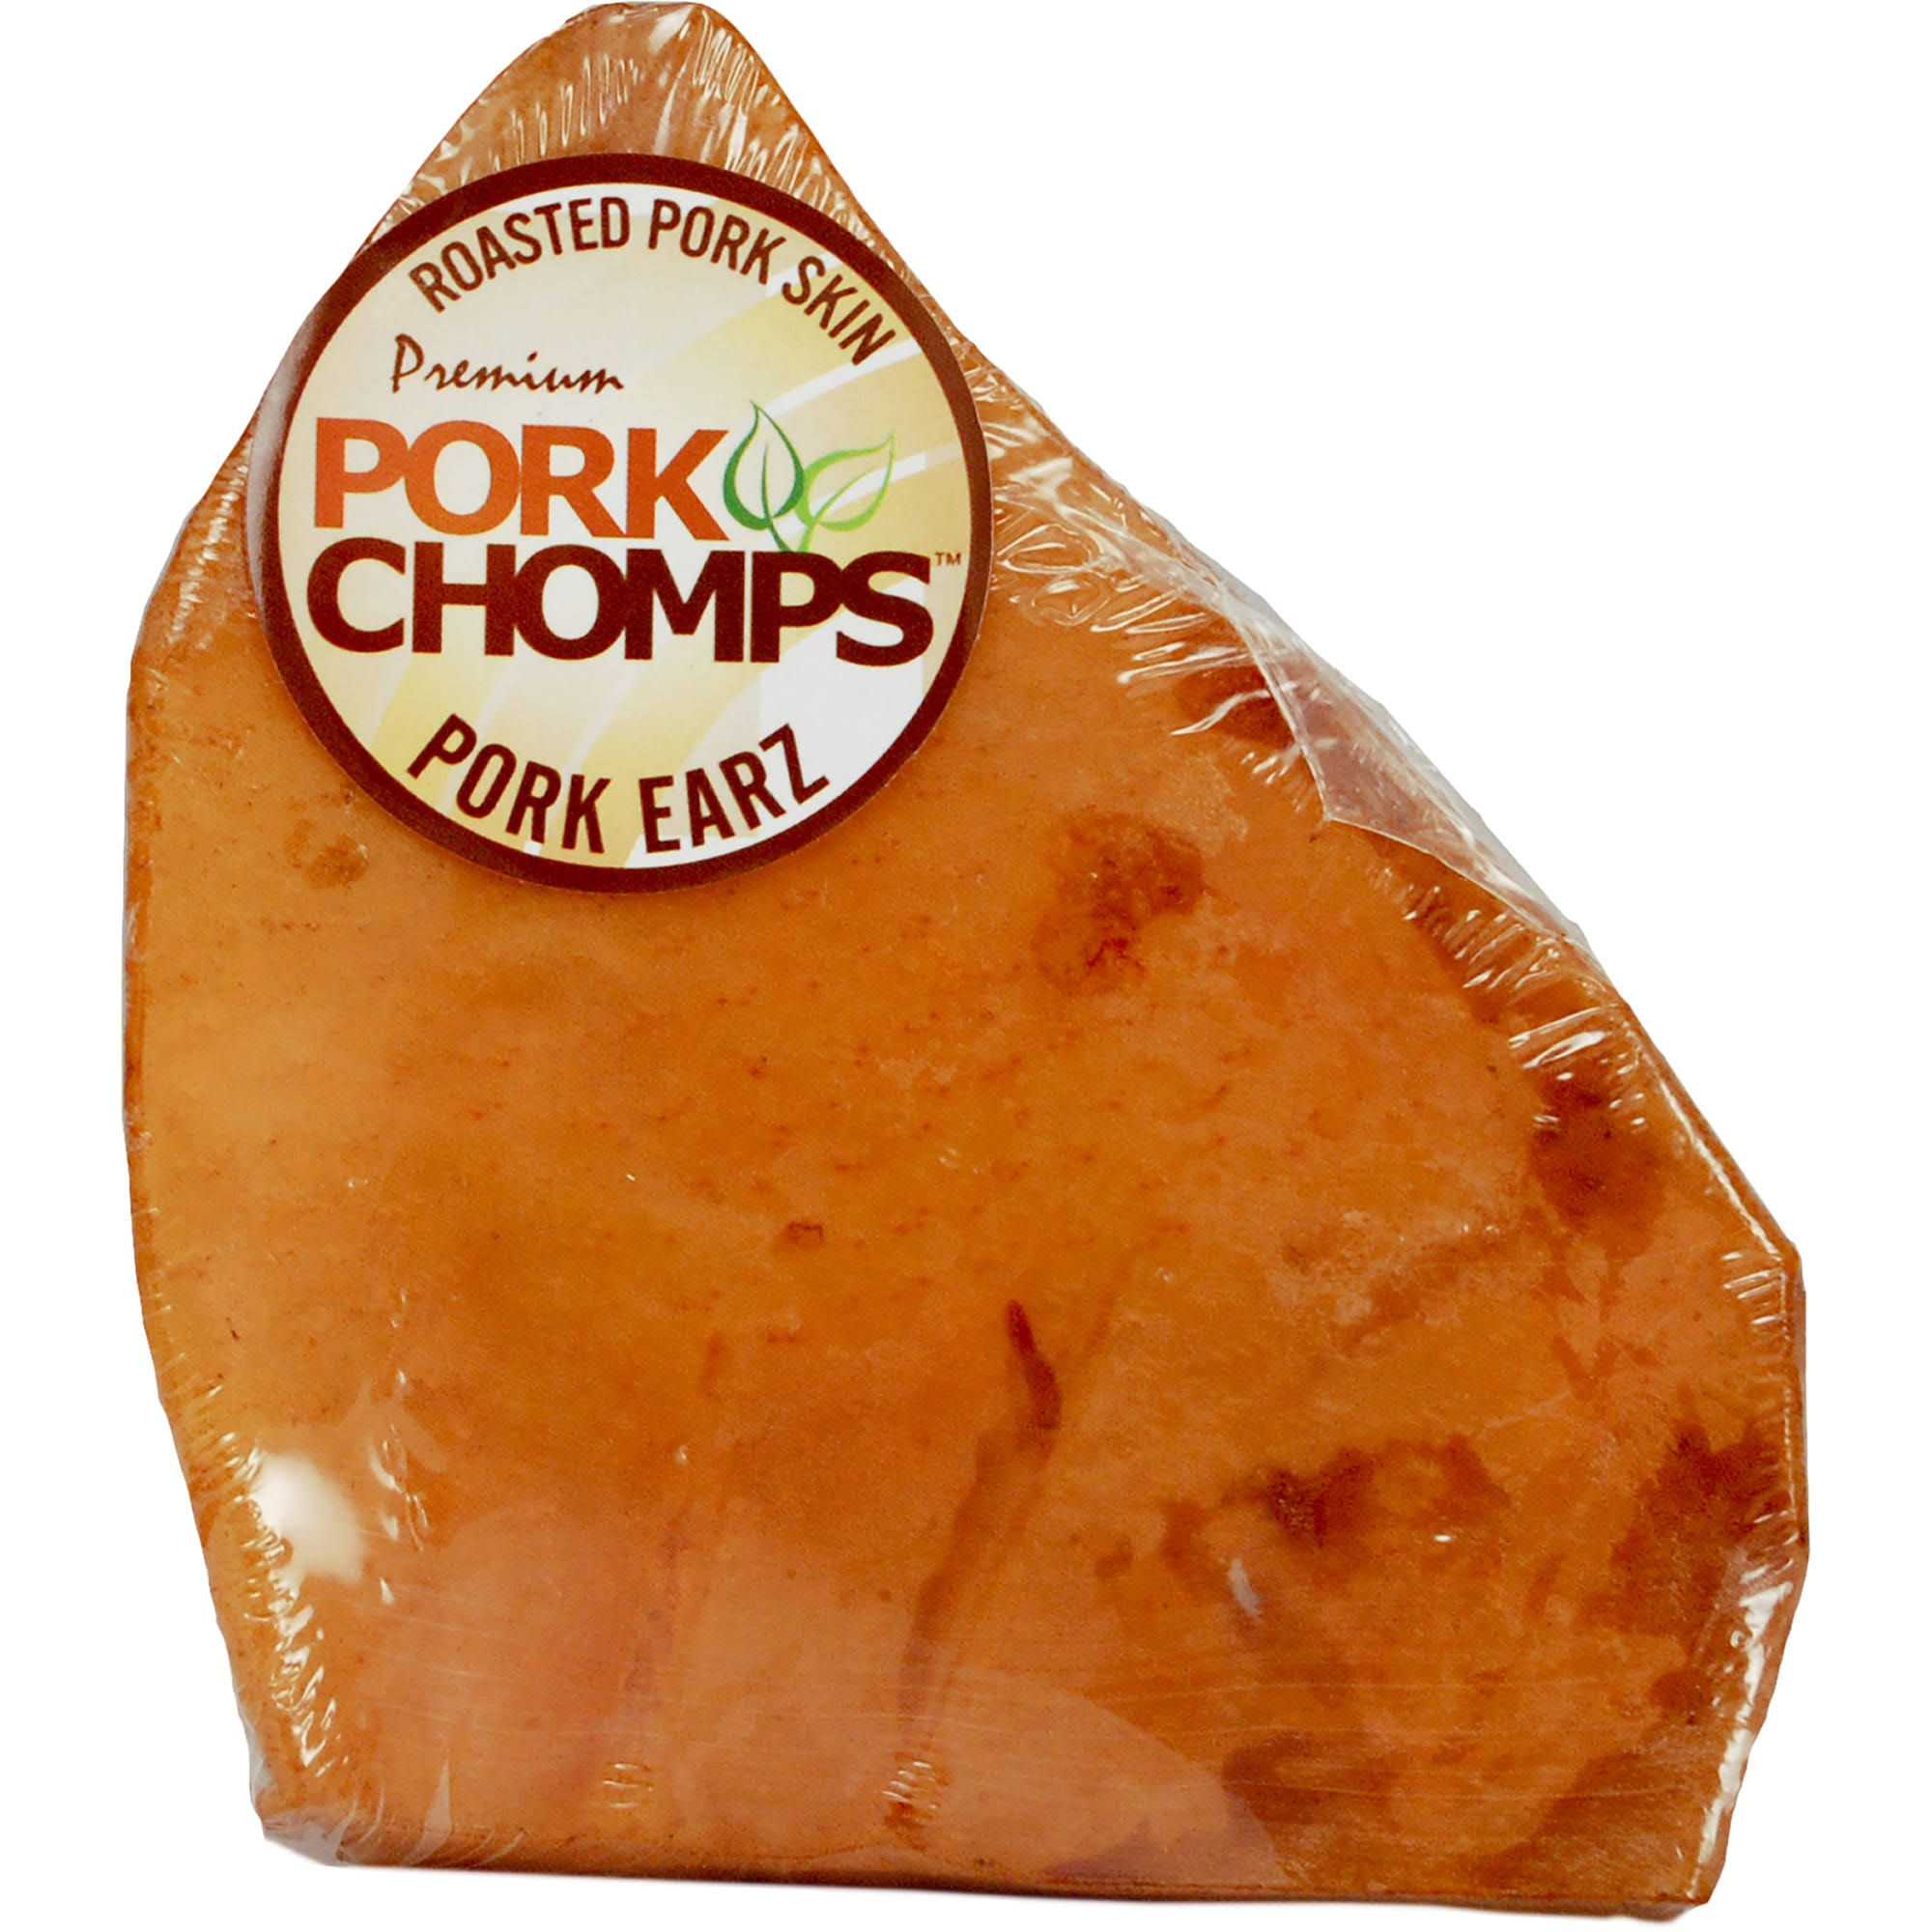 Pork Chomps Roasted Pork Ears - 1 count